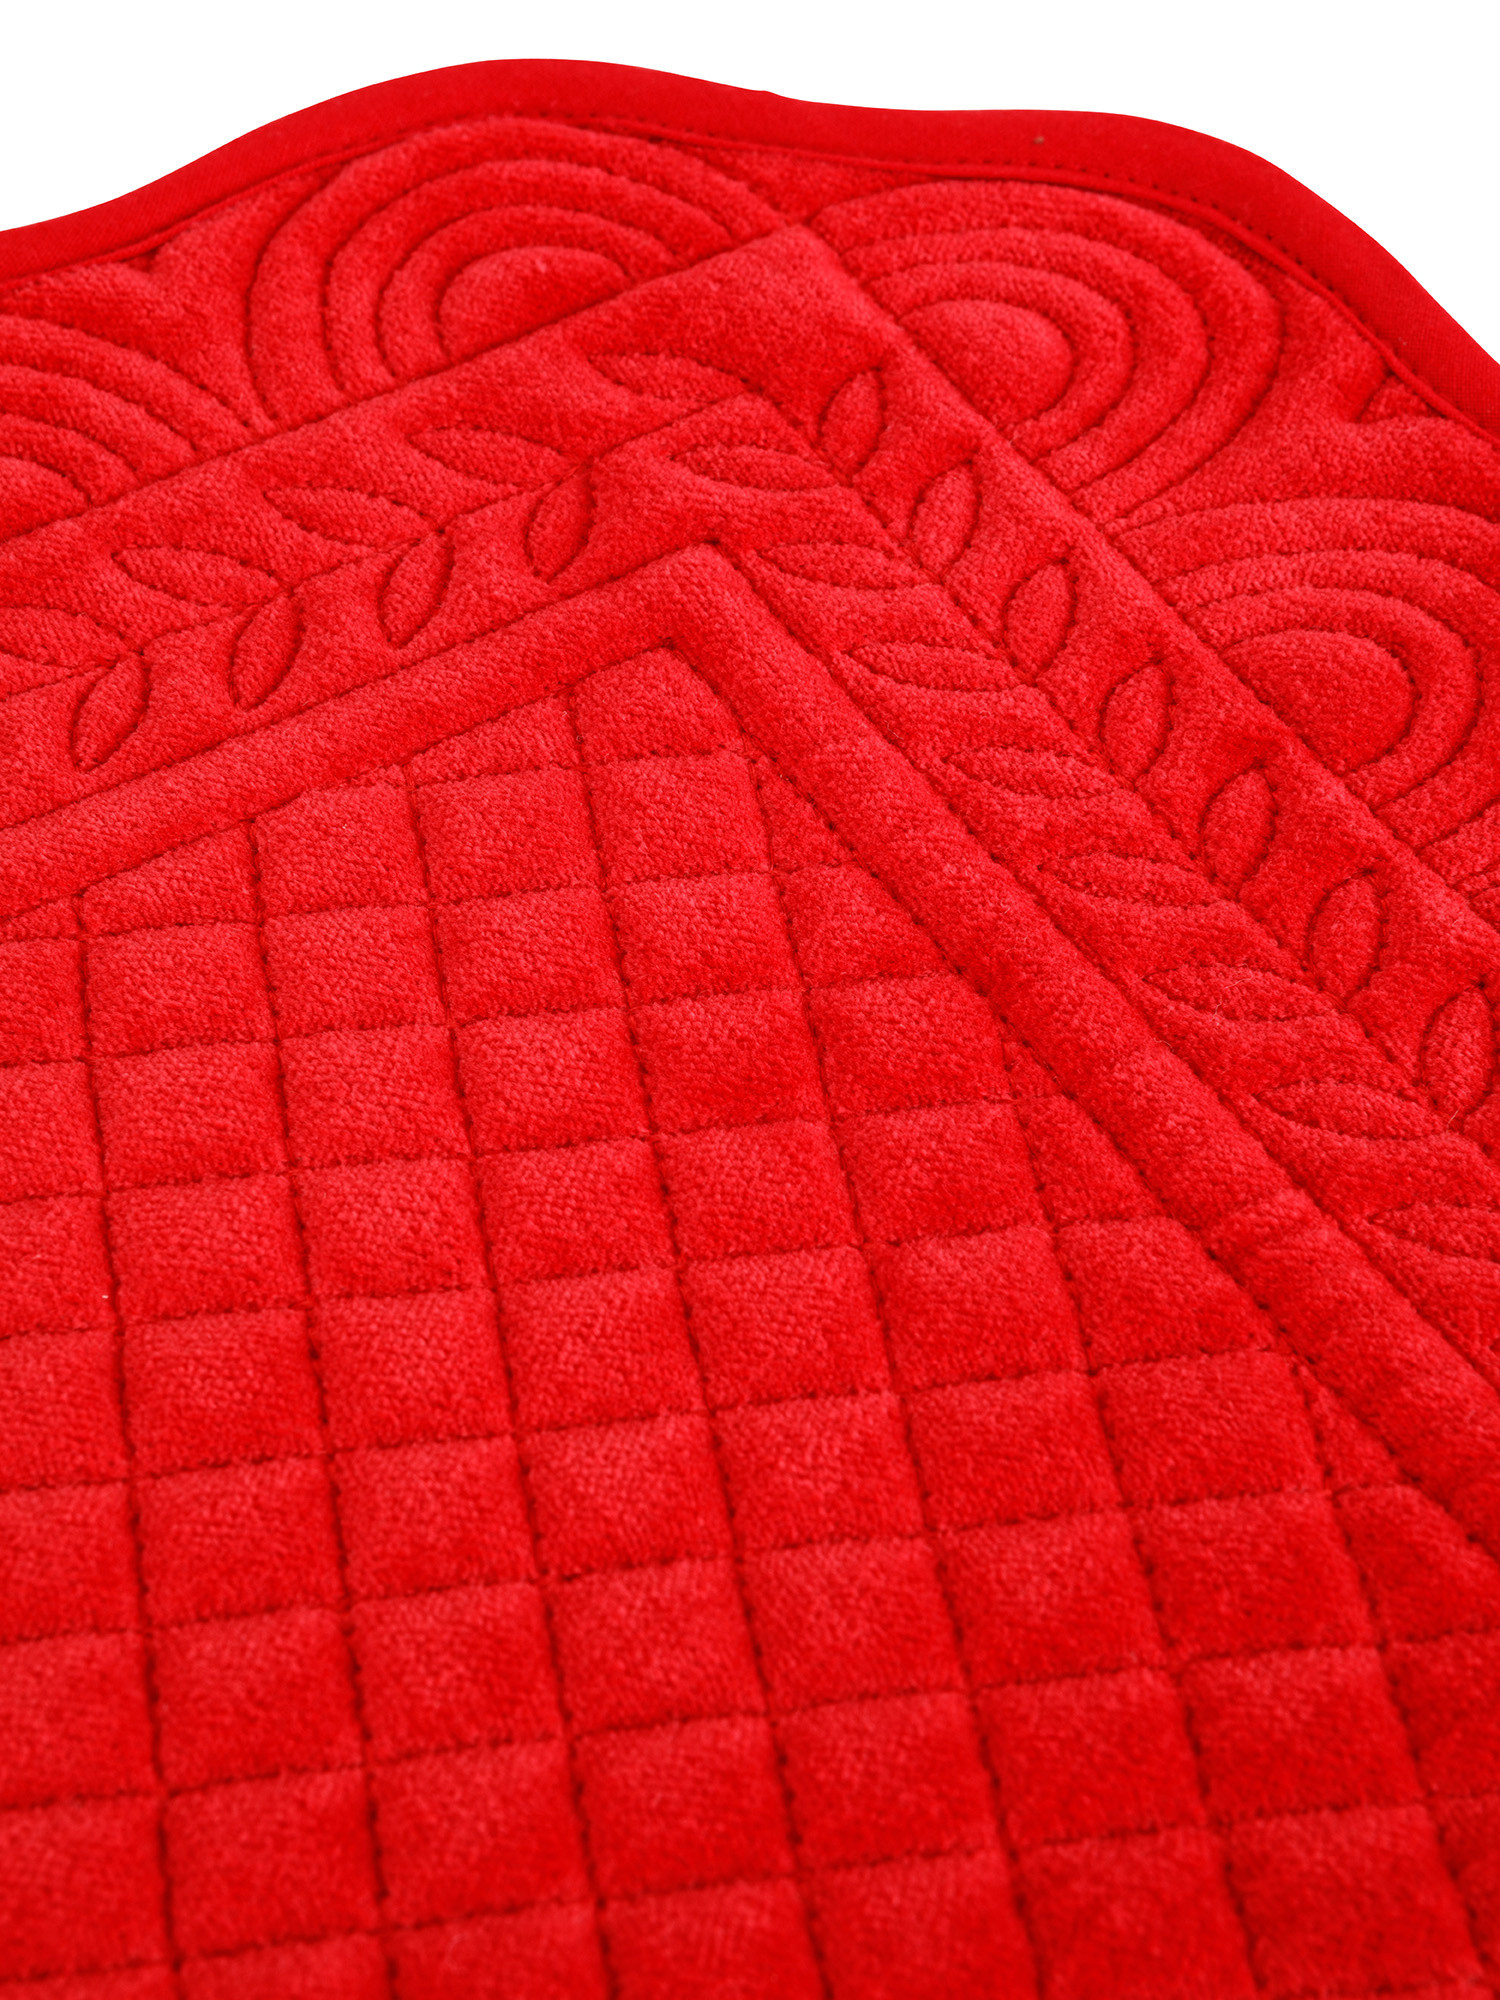 Tovaglietta trapuntata velluto di cotone tinta unita, Rosso, large image number 1